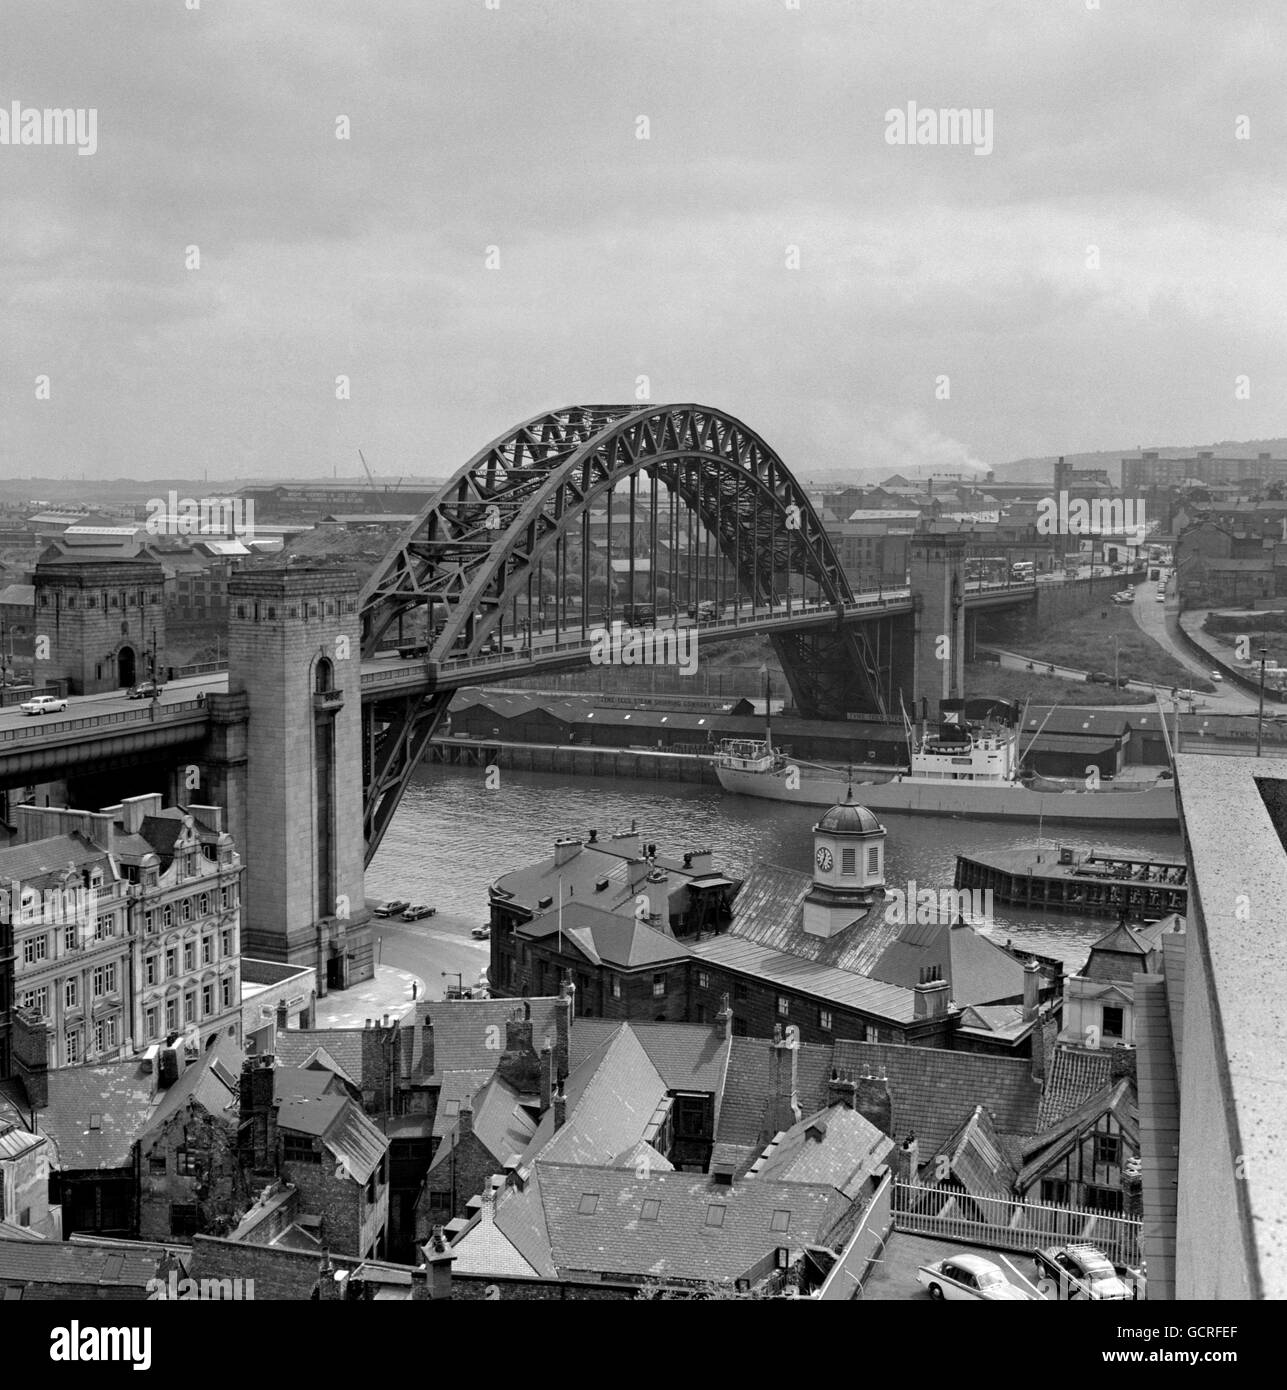 Die Tyne Bridge, fotografiert von der Newcastle-Seite des Flusses. Die Brücke, mit einer Fahrbahn 84 Meter über der hohen Wassermarke, wurde 1928 von König Georg V. eröffnet. Stockfoto